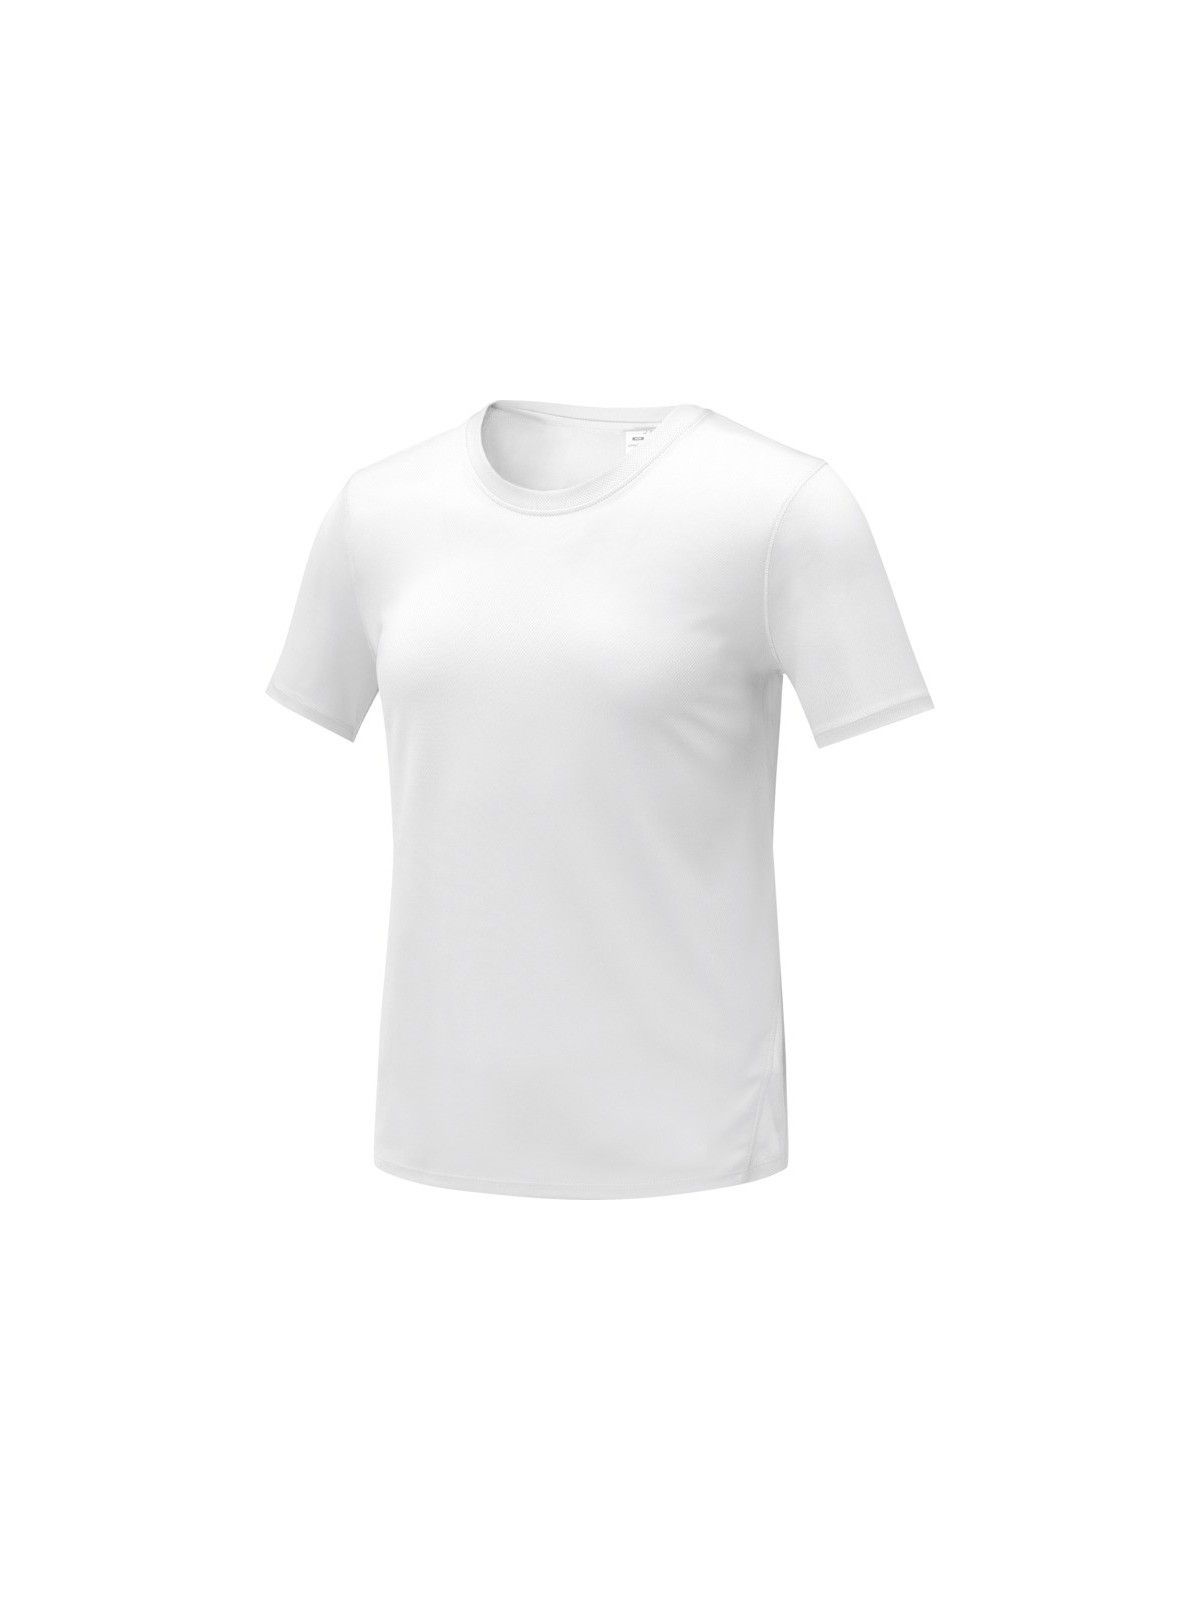 10-136 T-shirt à manches courtes cool fit pour femme personnalisé